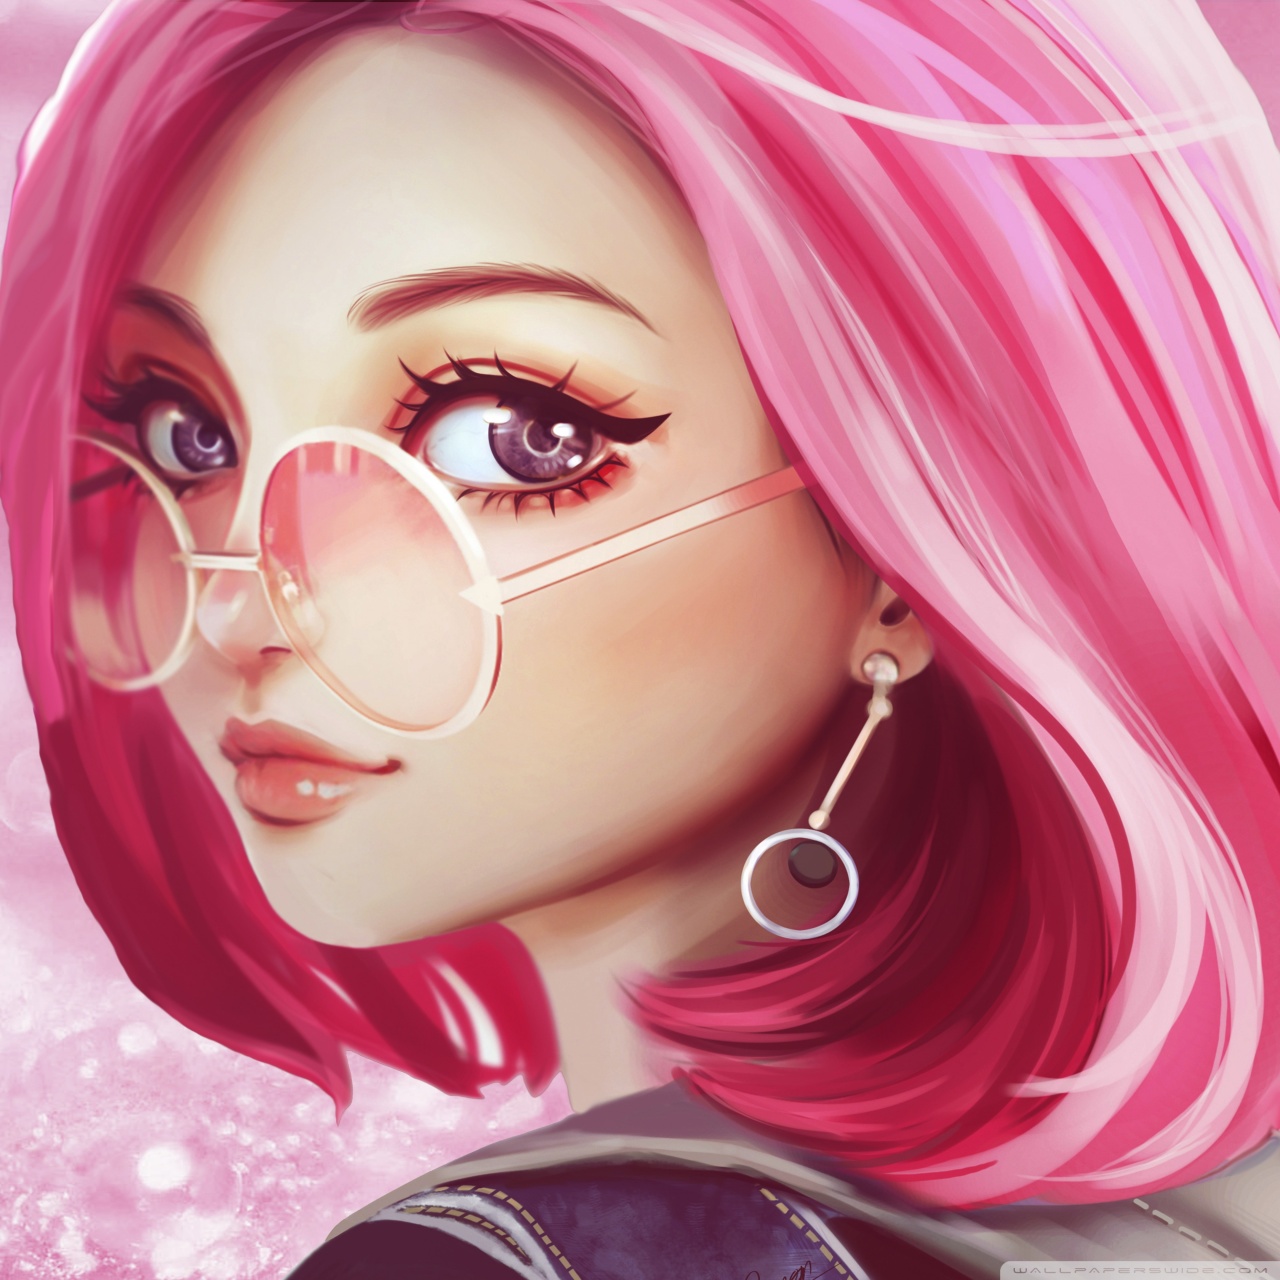 Cute Girl Pink Hair Sunglasses Digital Art Drawing Ultra Hd